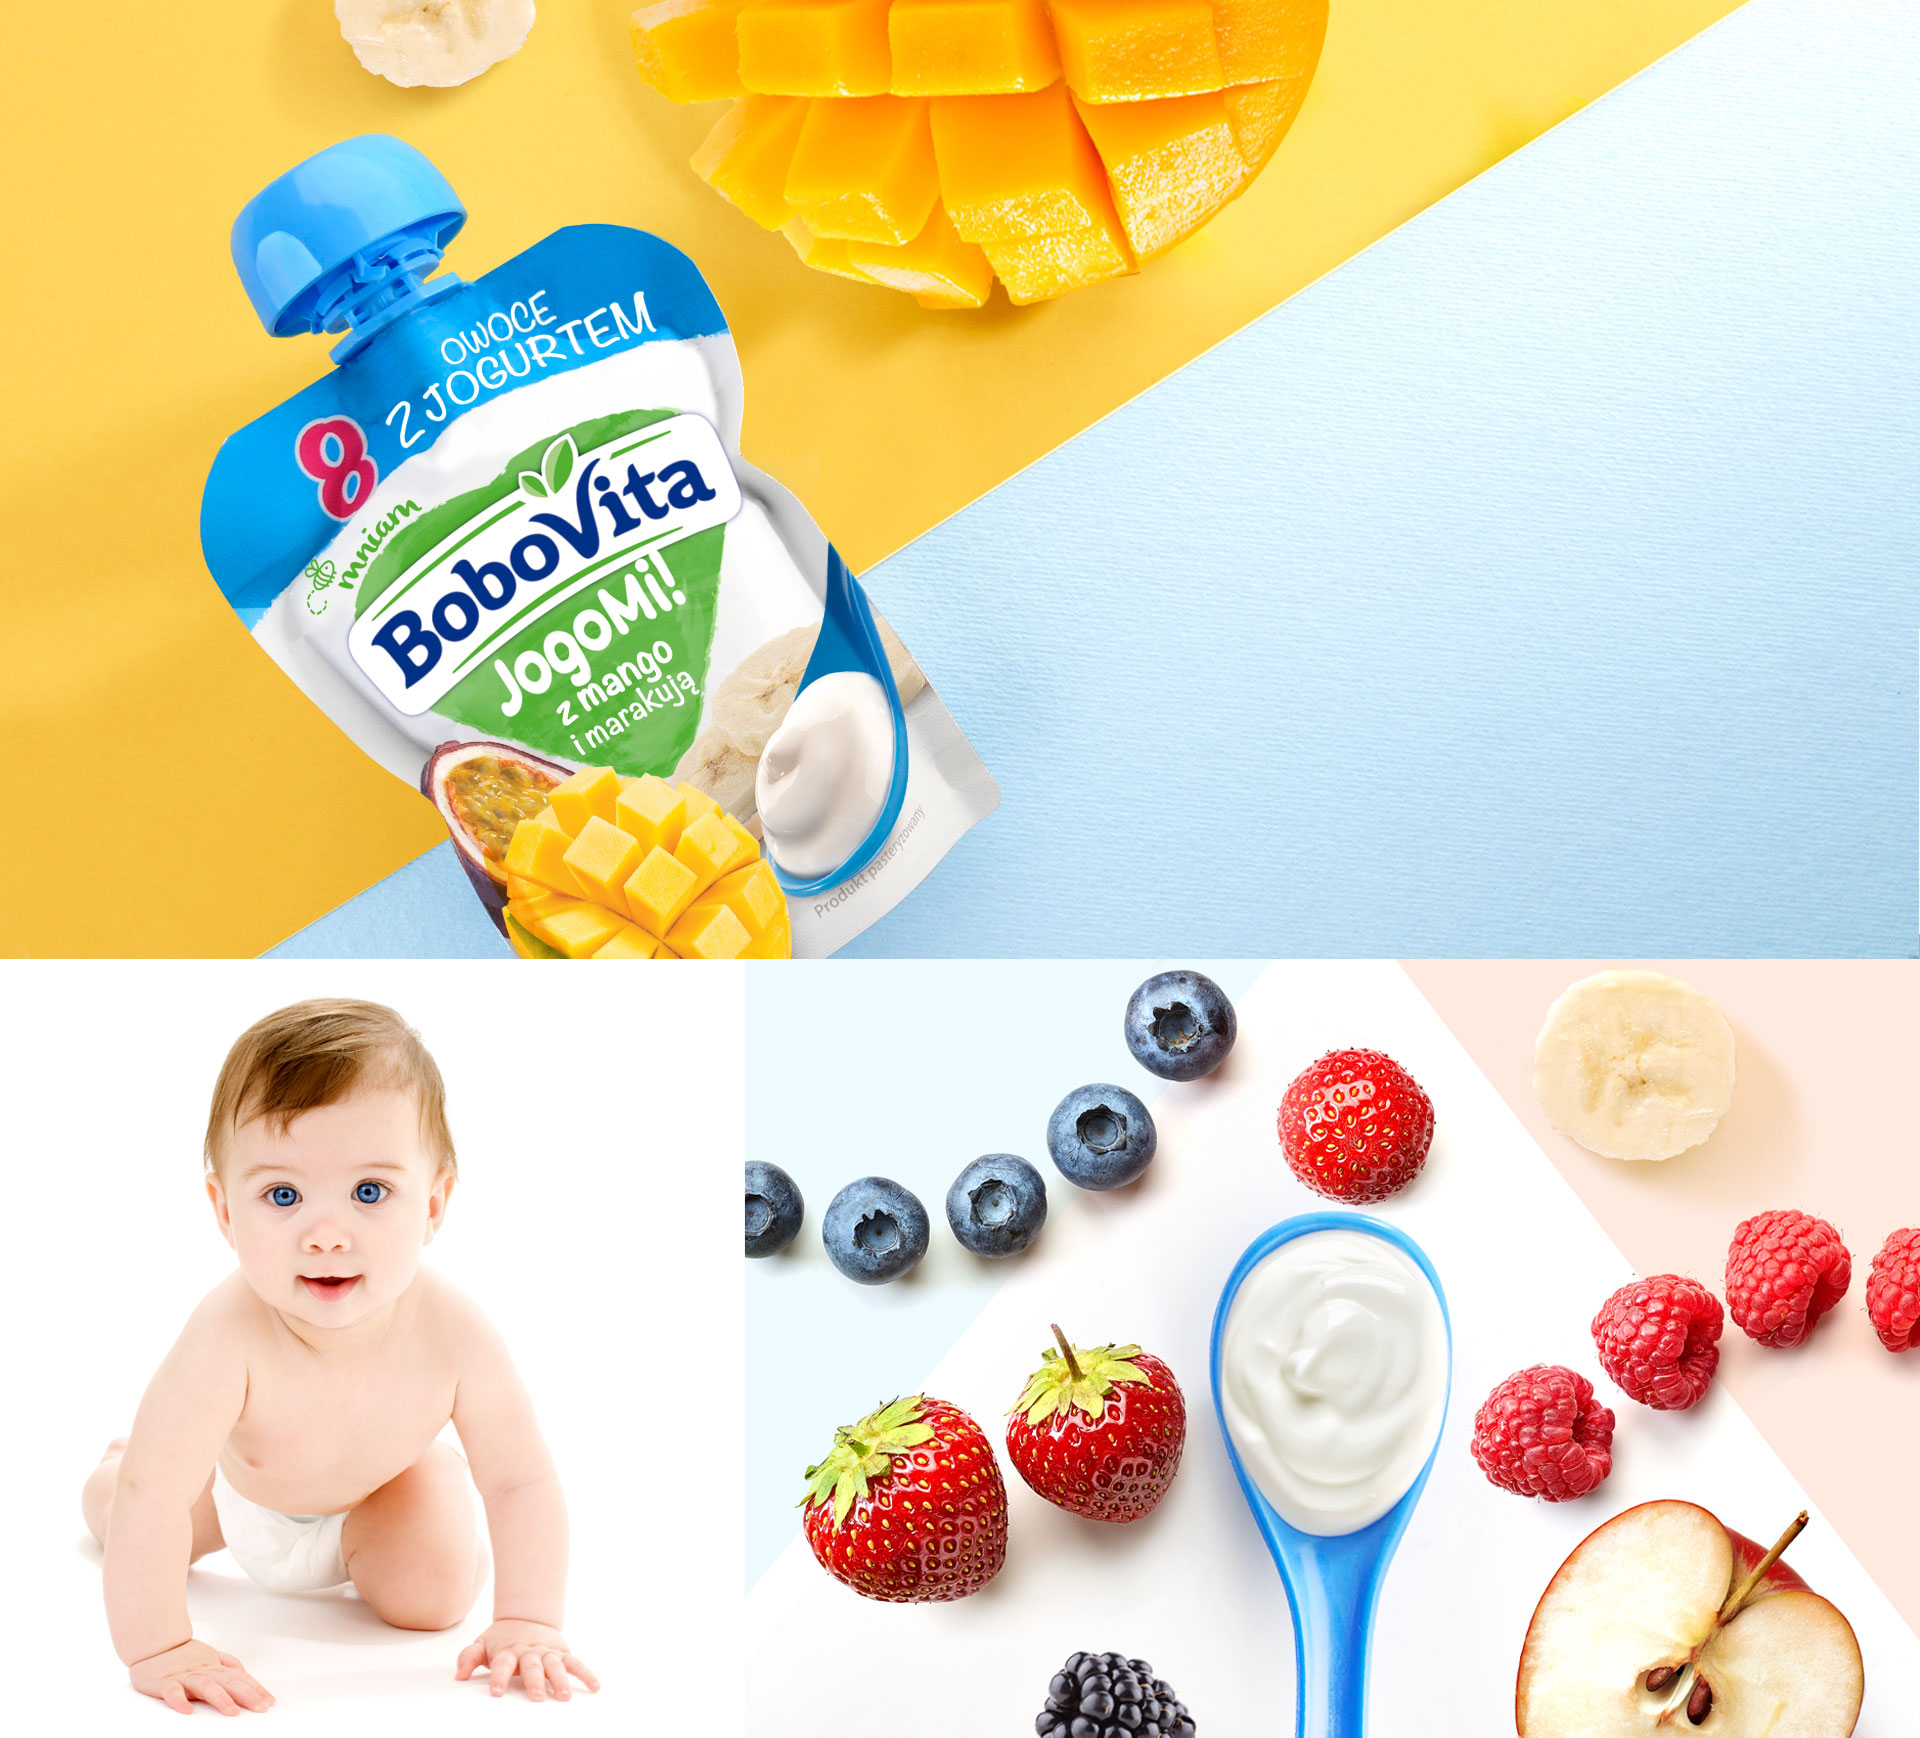 Projektowanie opakowań Bobovita JogoMi - owoce i jogurt dla dzieci.